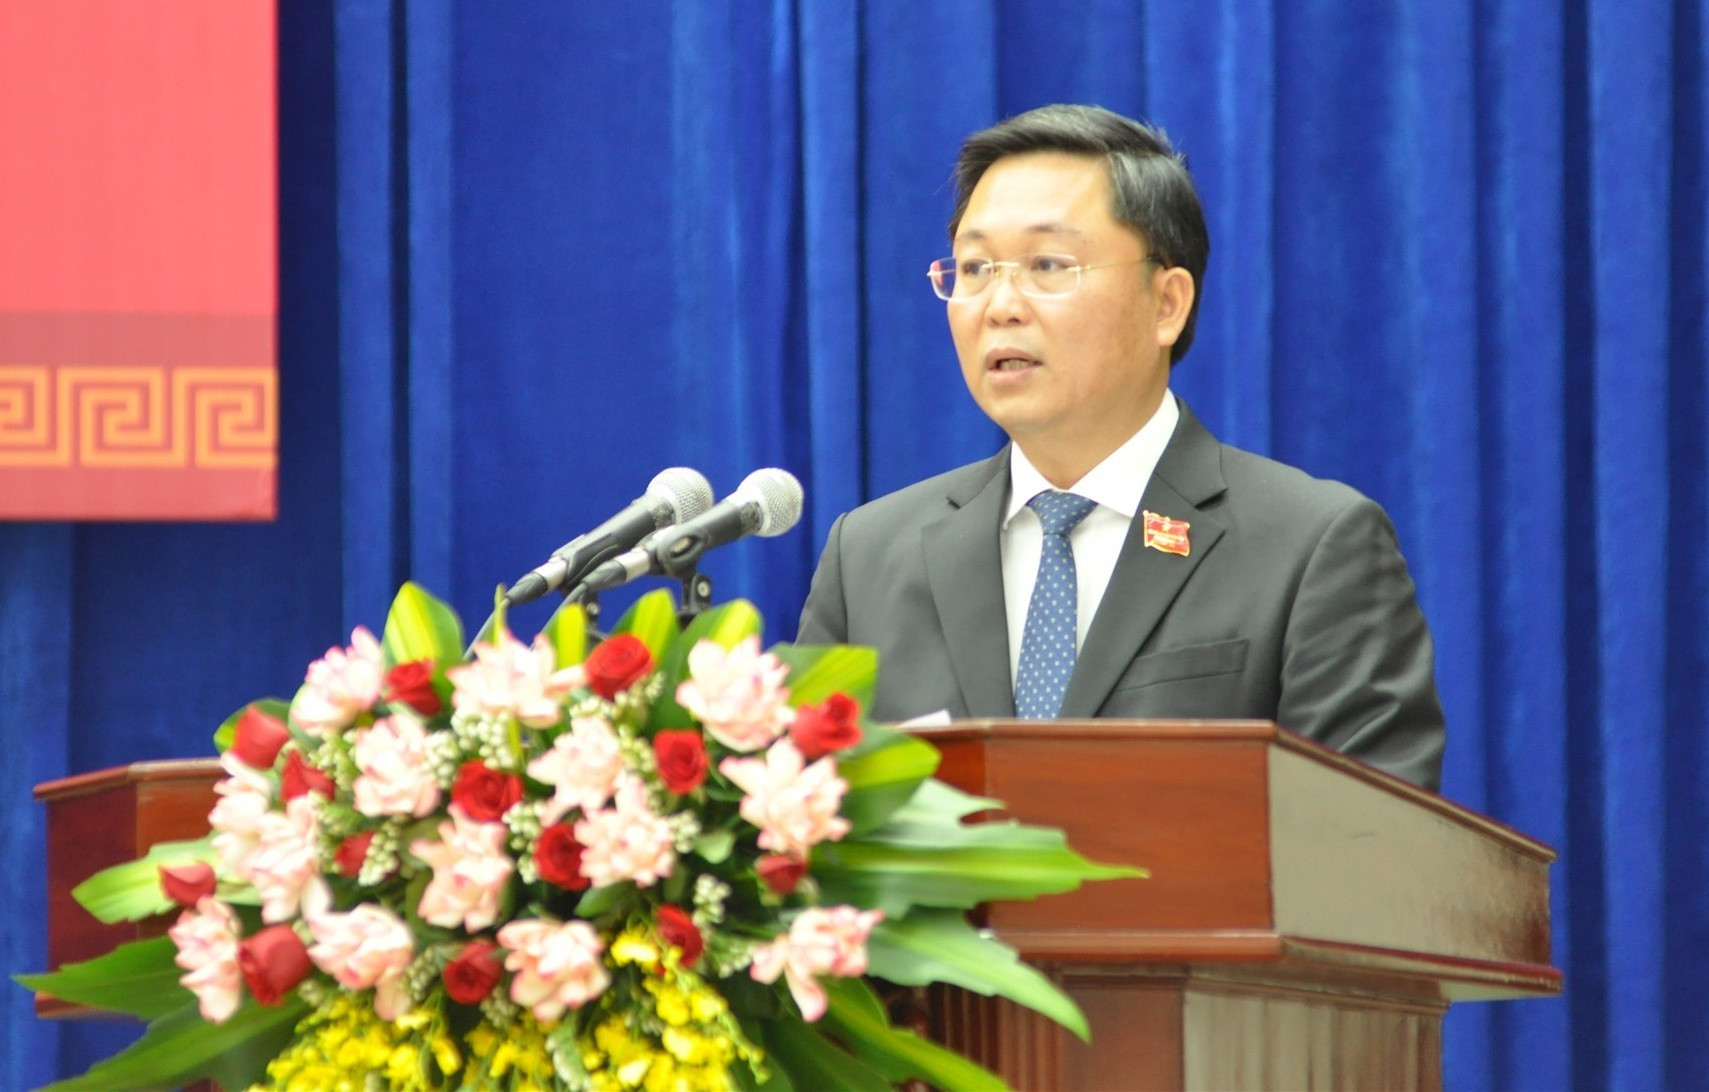 Thay mặt tập thể UBND tỉnh nhiệm kỳ 2021 - 2026, Chủ tịch UBND tỉnh Lê Trí Thanh phát biểu nhận nhiệm vụ. Ảnh: P.Đ